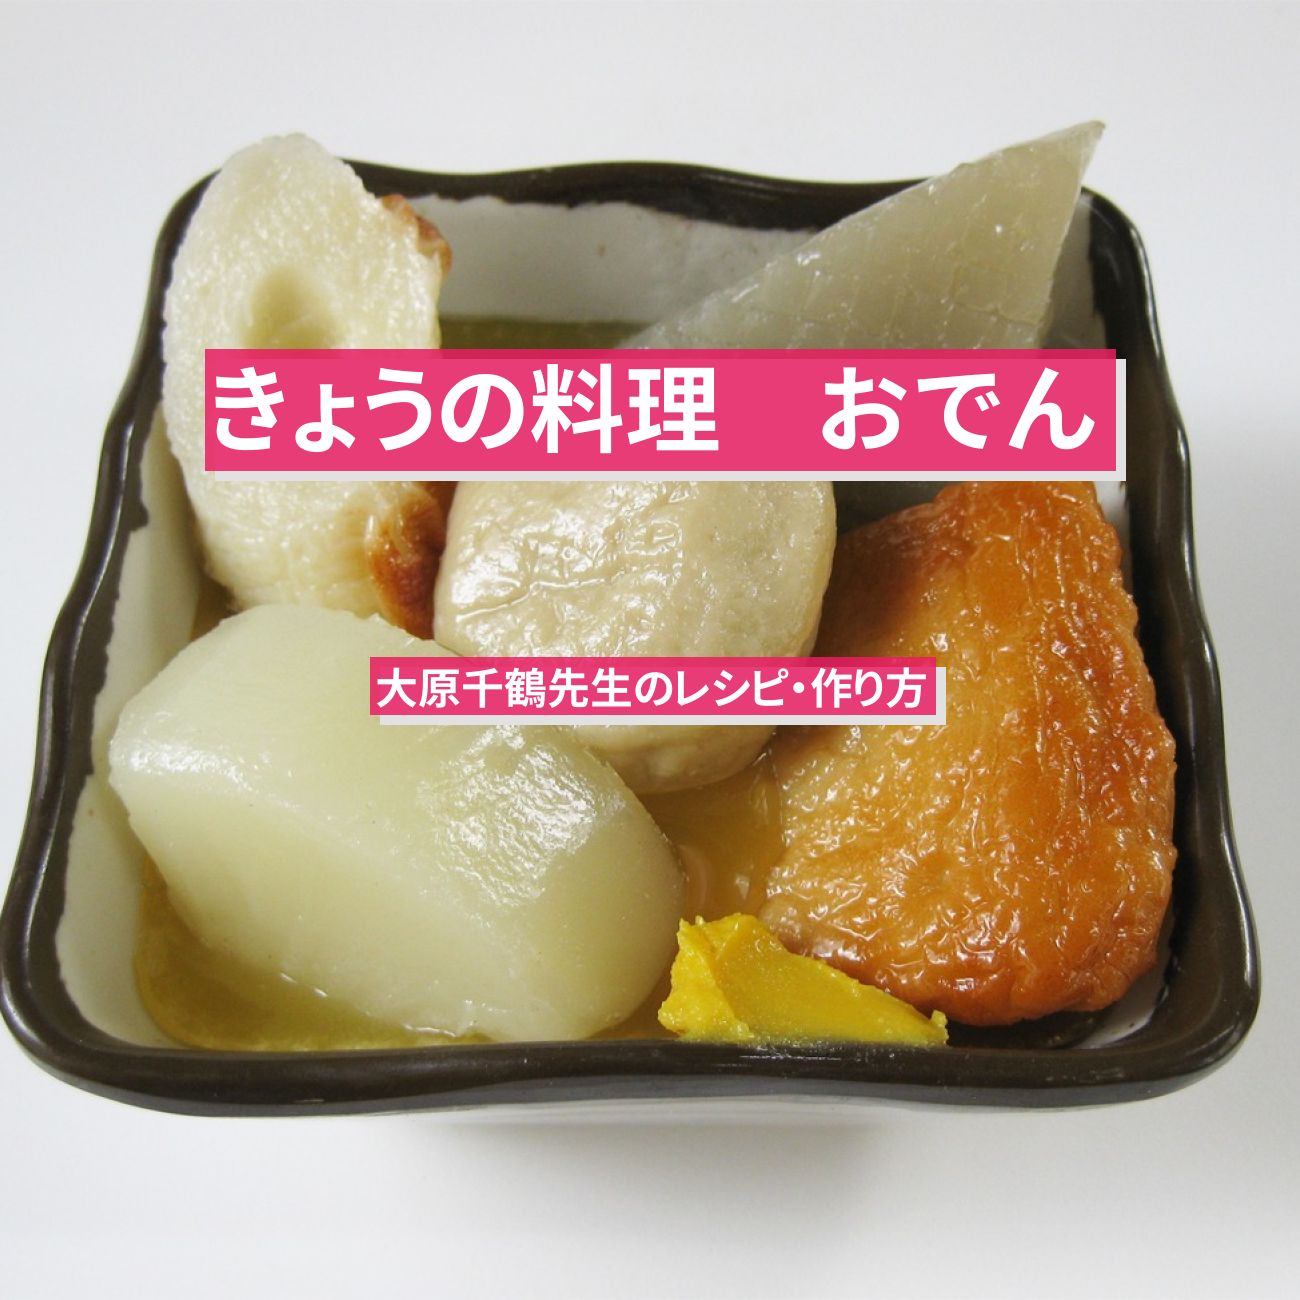 【きょうの料理】『おでん』大原千鶴先生のレシピ・作り方